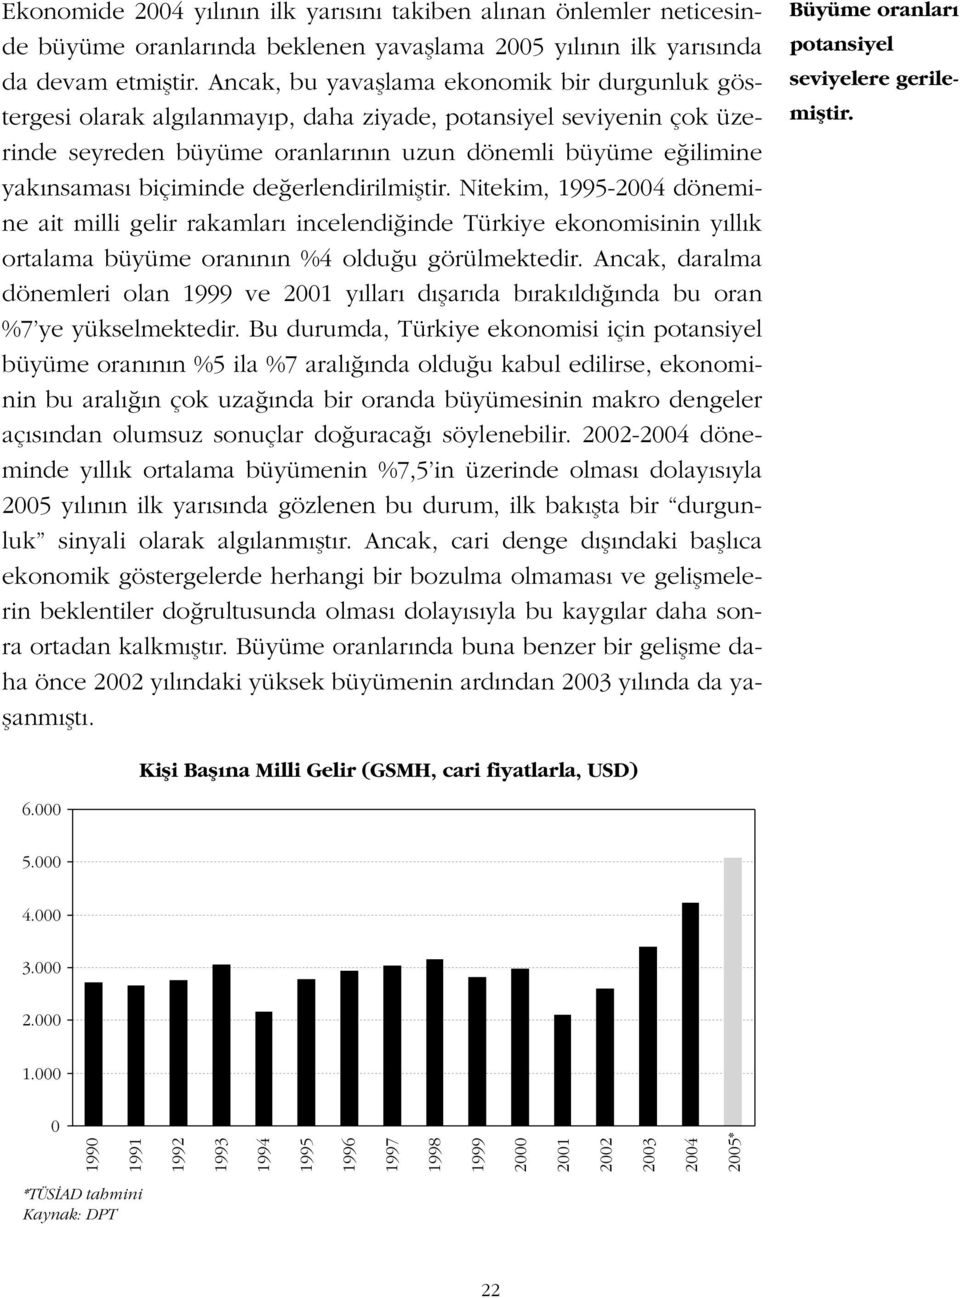 biçiminde de erlendirilmifltir. Nitekim, 1995-2004 dönemine ait milli gelir rakamlar incelendi inde Türkiye ekonomisinin y ll k ortalama büyüme oran n n %4 oldu u görülmektedir.